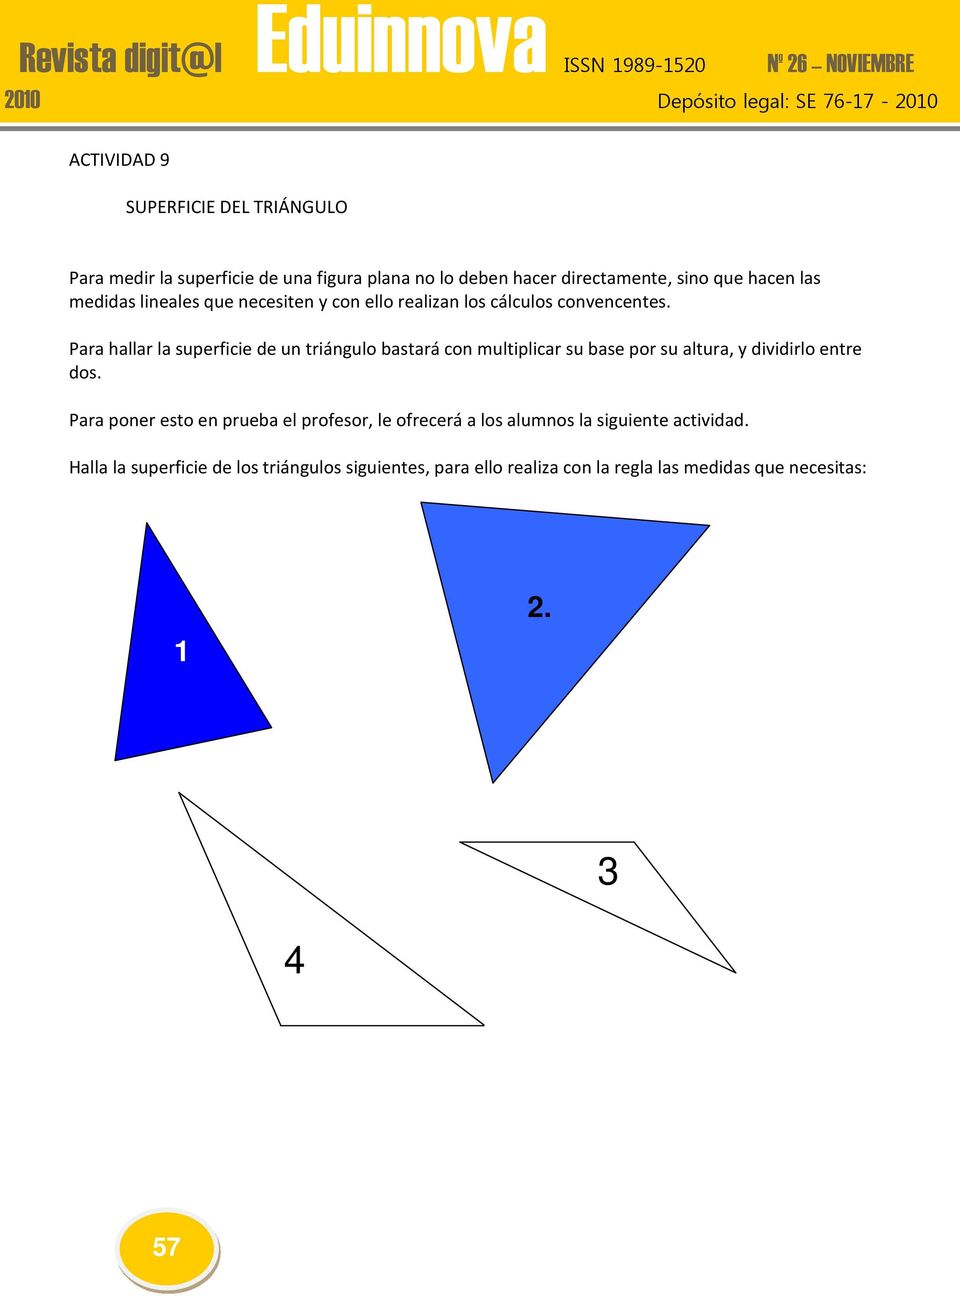 Para hallar la superficie de un triángulo bastará con multiplicar su base por su altura, y dividirlo entre dos.